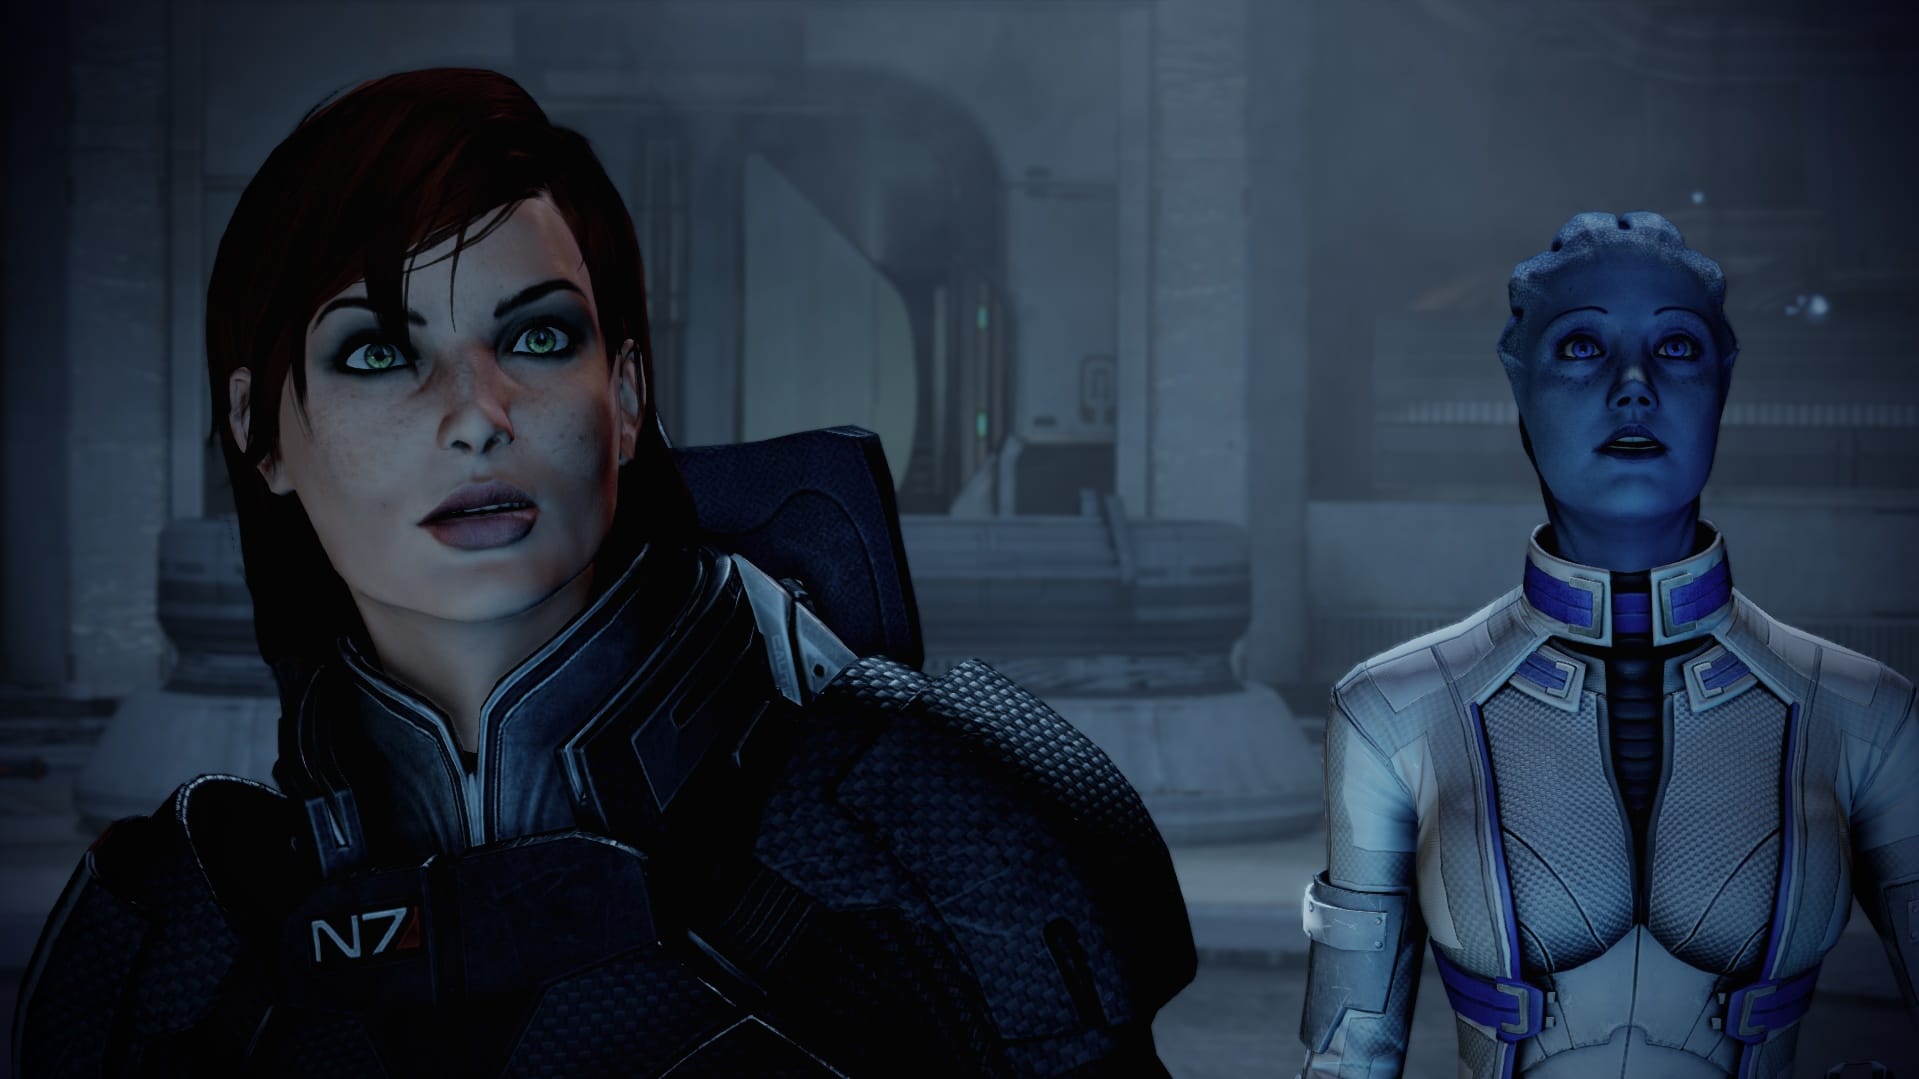 Expresiones faciales que lo dicen todo. Mass Effect 2 siempre es bueno para sorprender.